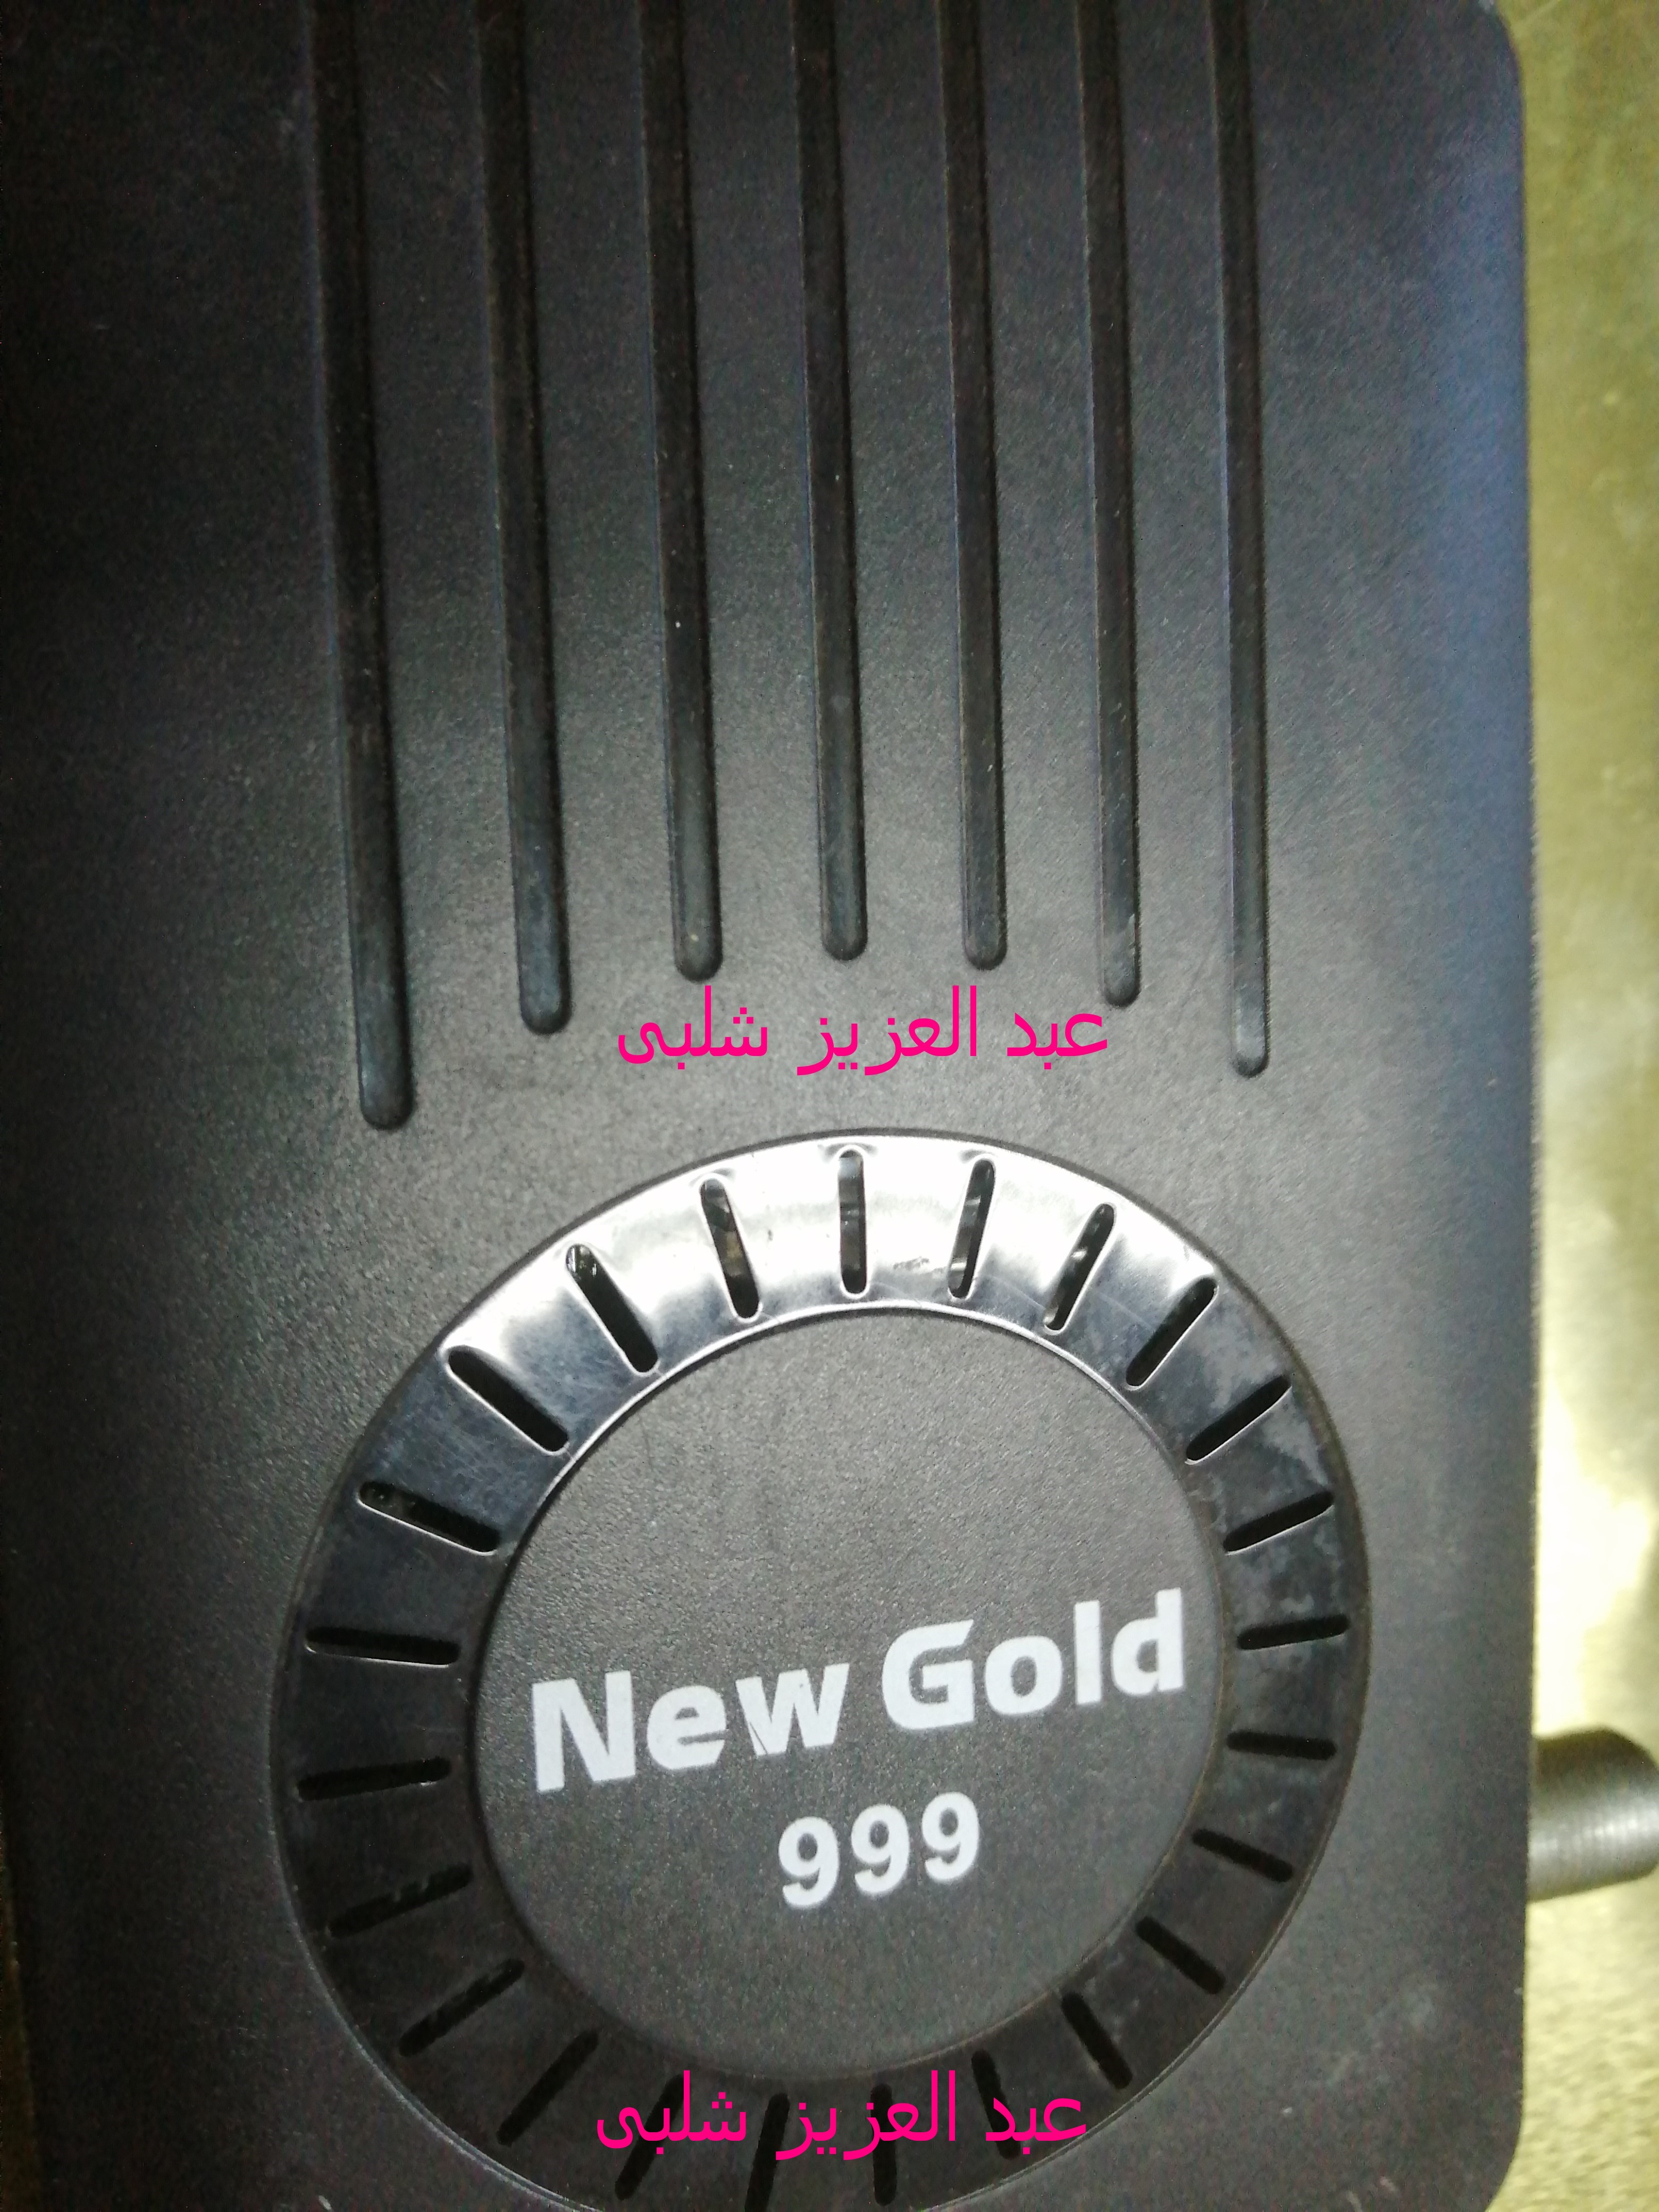  New Gold 999 3.jpg